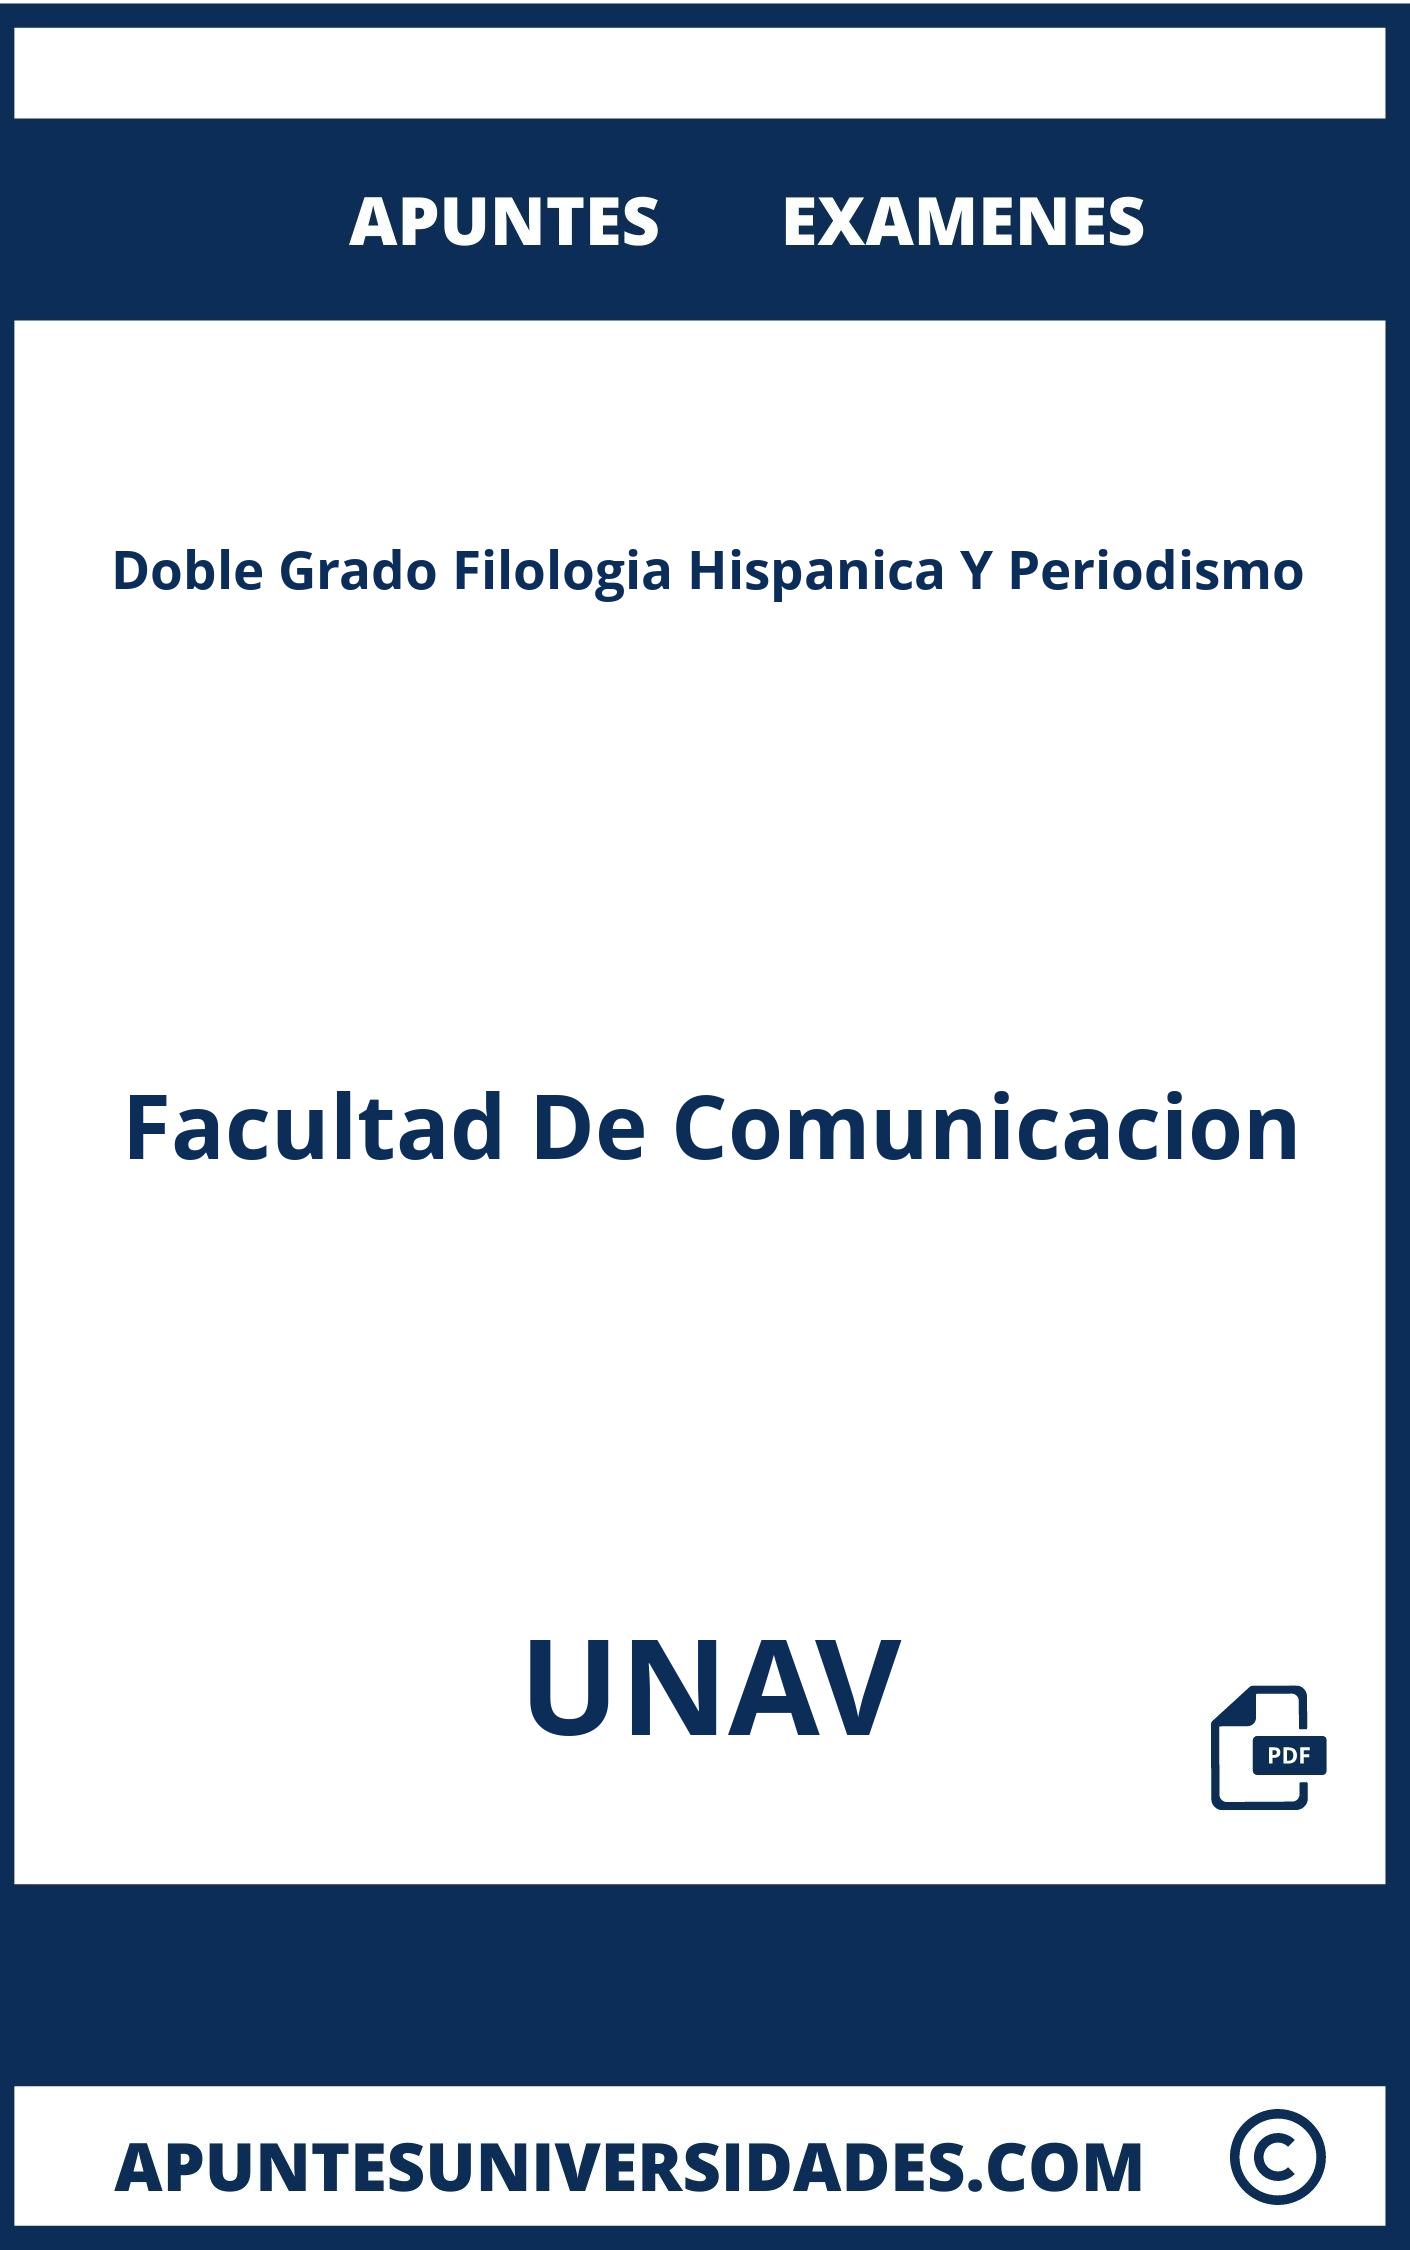 Apuntes Examenes Doble Grado Filologia Hispanica Y Periodismo UNAV